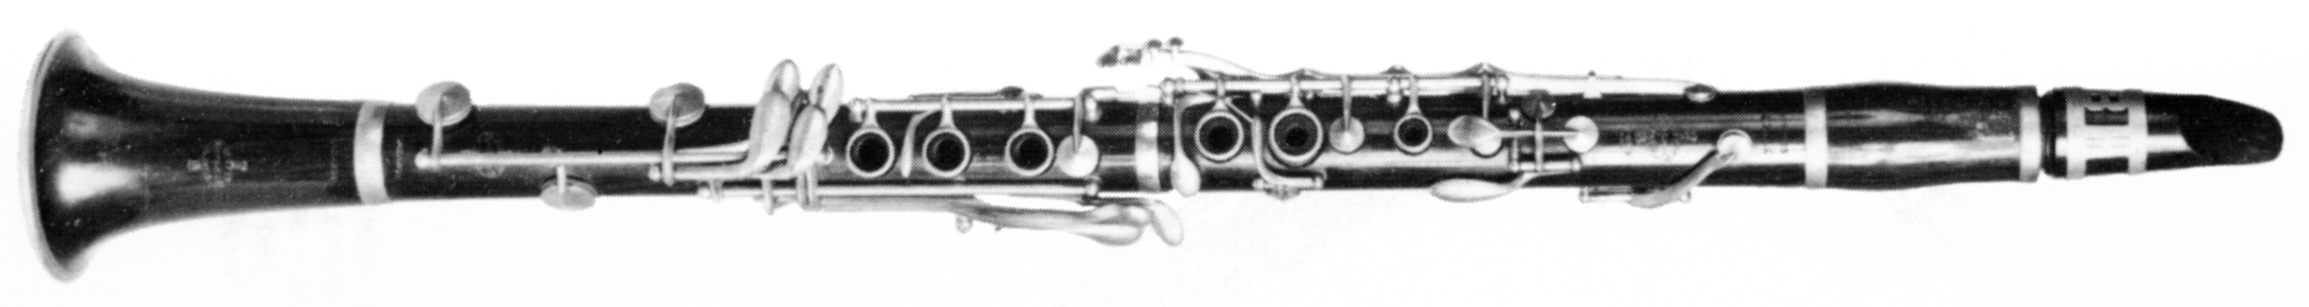 Clarinette système Klosé fabriquée en 1870 par Buffet Crampon.